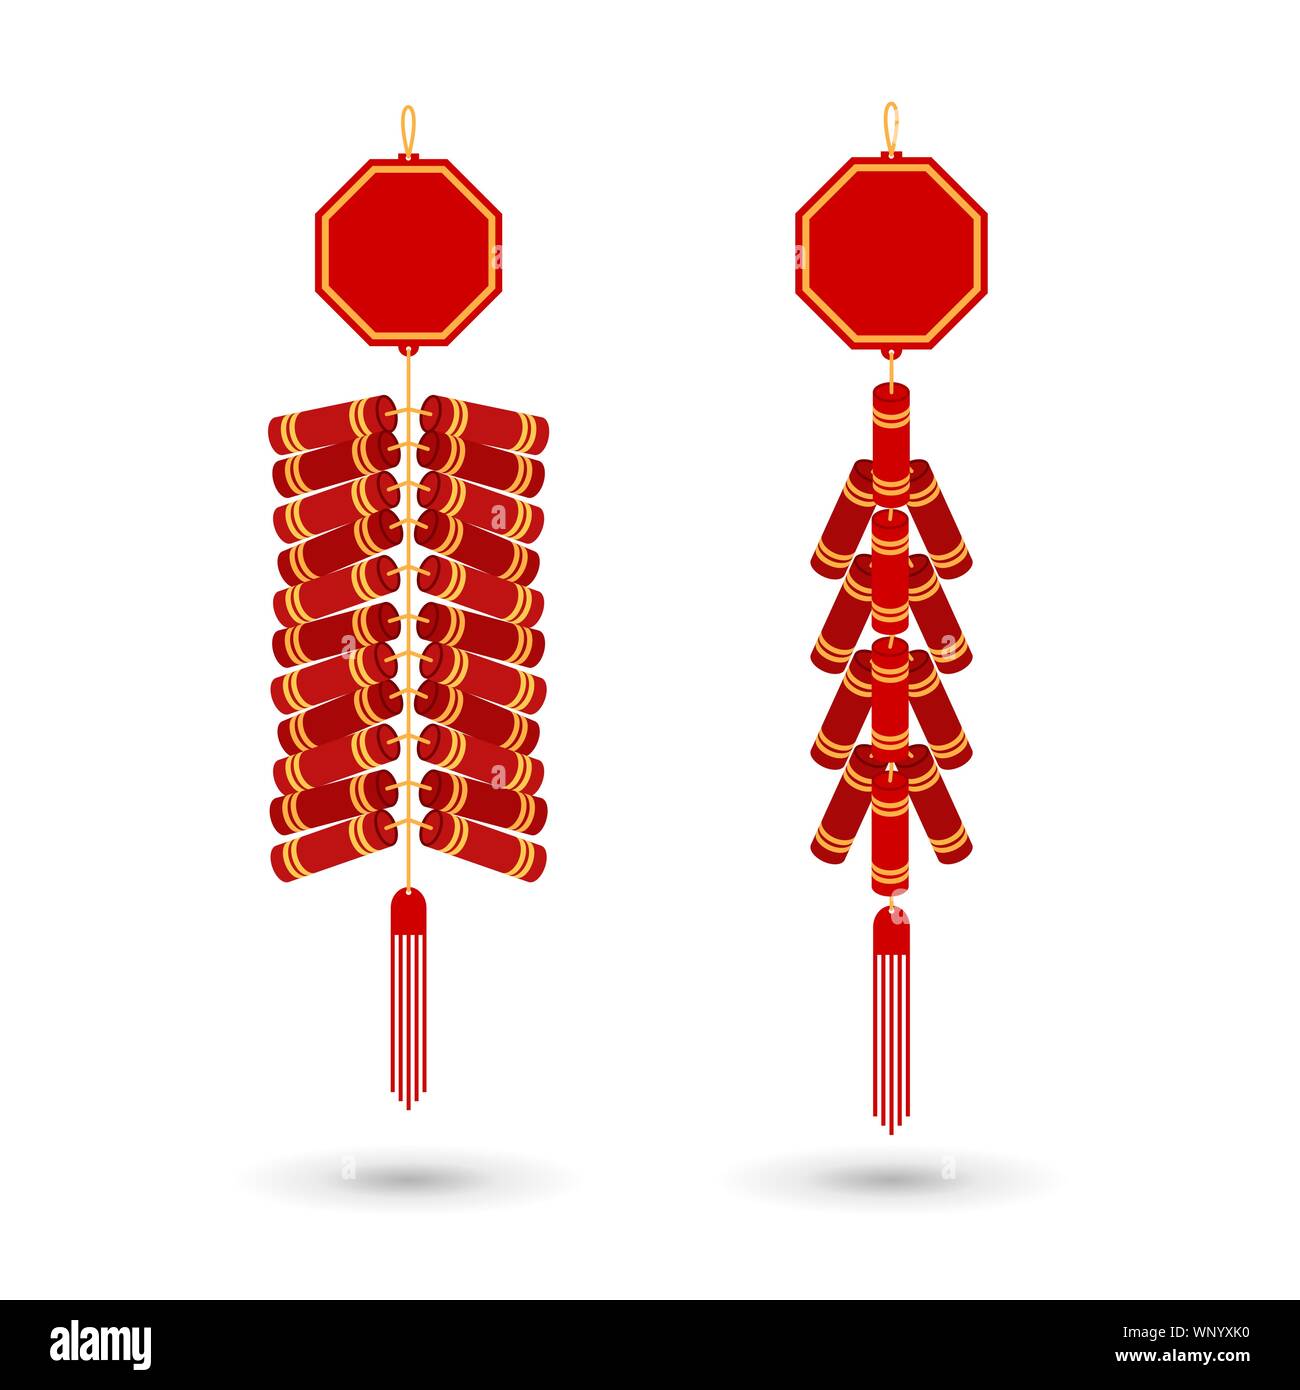 L'icône rouge pétard chinois télévision. Vector illustration. Red Fire cracker art design pour la célébration du nouvel an chinois. Illustration de Vecteur